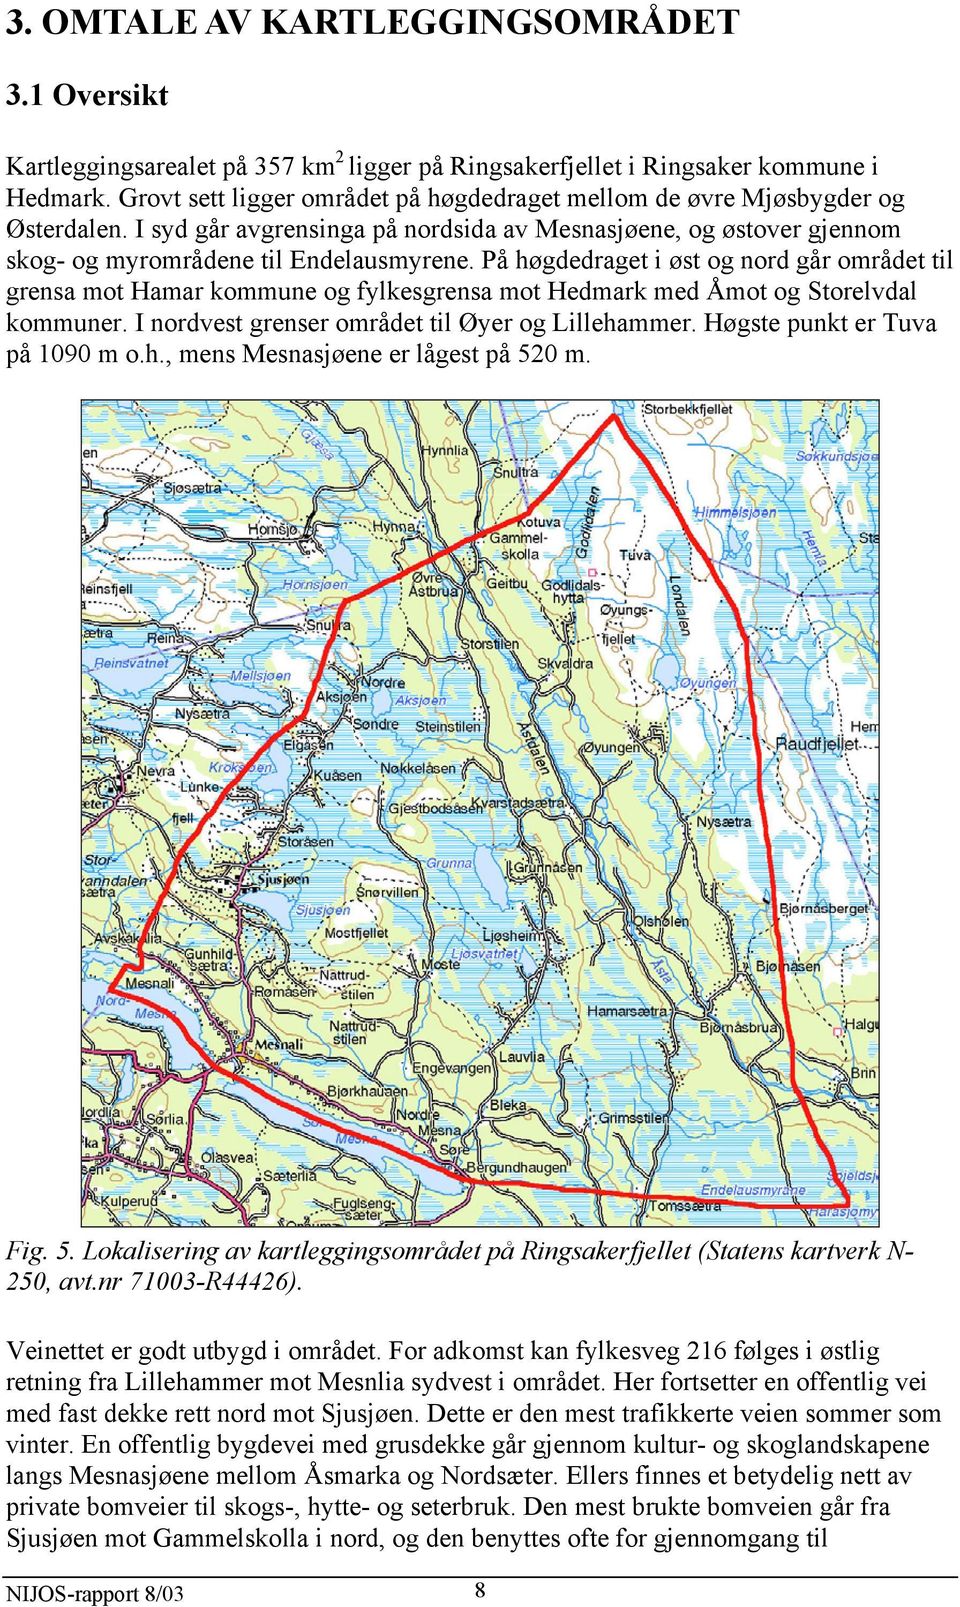 På høgdedraget i øst og nord går området til grensa mot Hamar kommune og fylkesgrensa mot Hedmark med Åmot og Storelvdal kommuner. I nordvest grenser området til Øyer og Lillehammer.